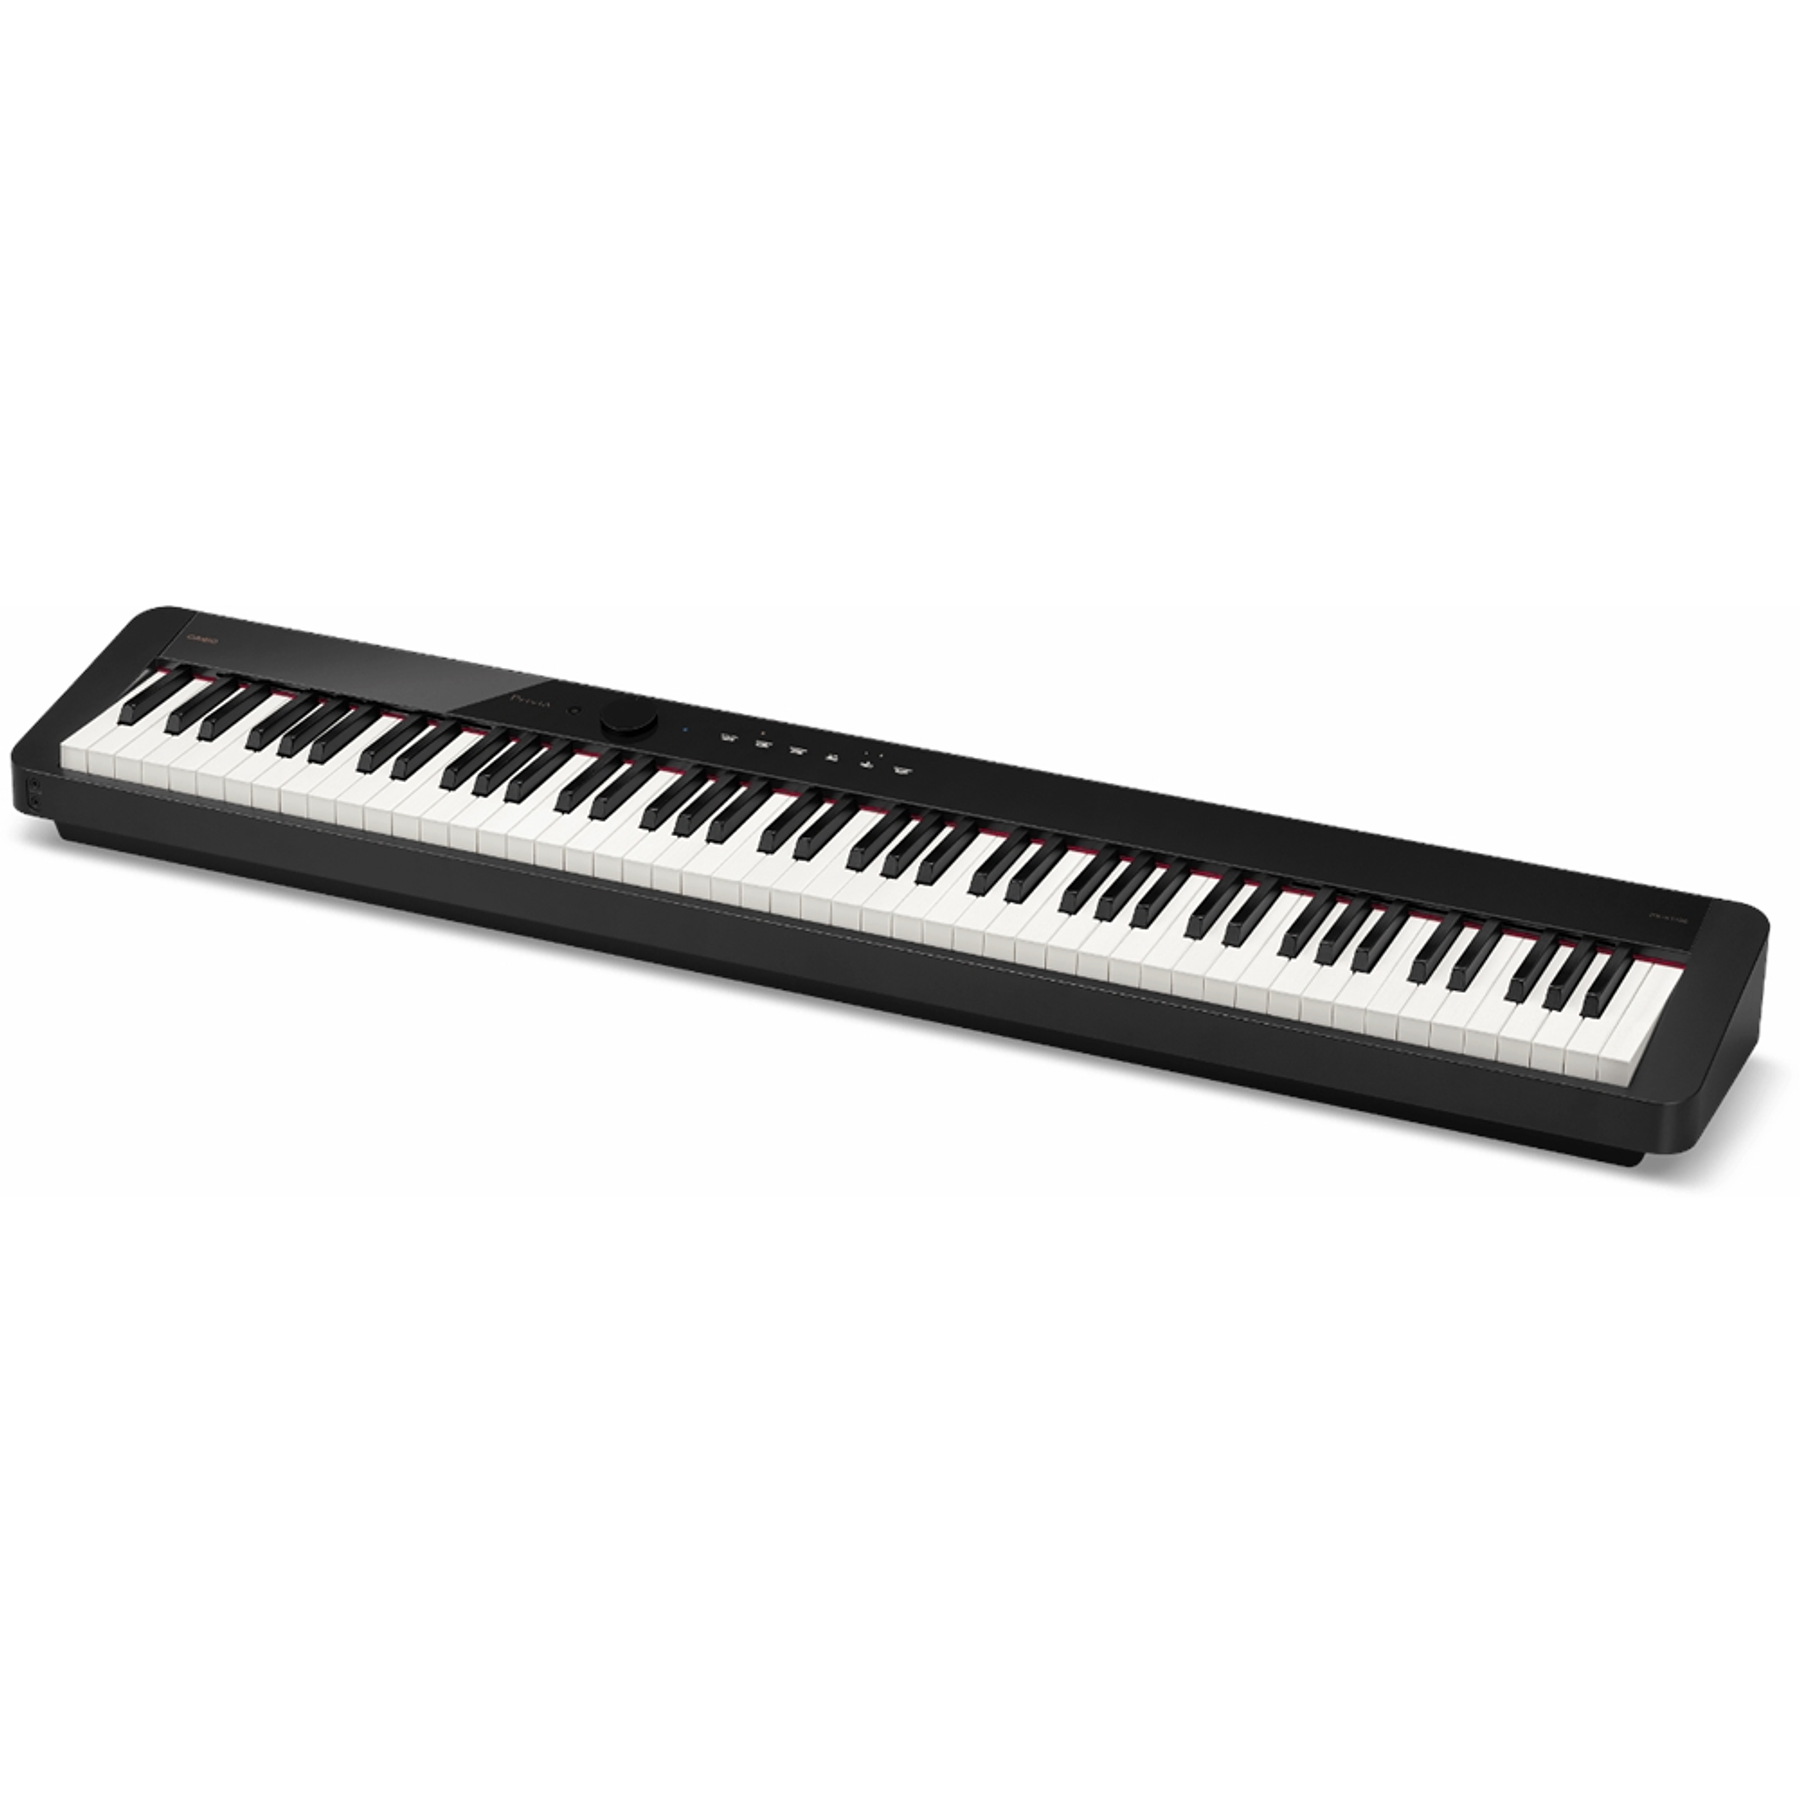 Piano Digital Casio Privia PX-S1100 Negro, 88 teclas